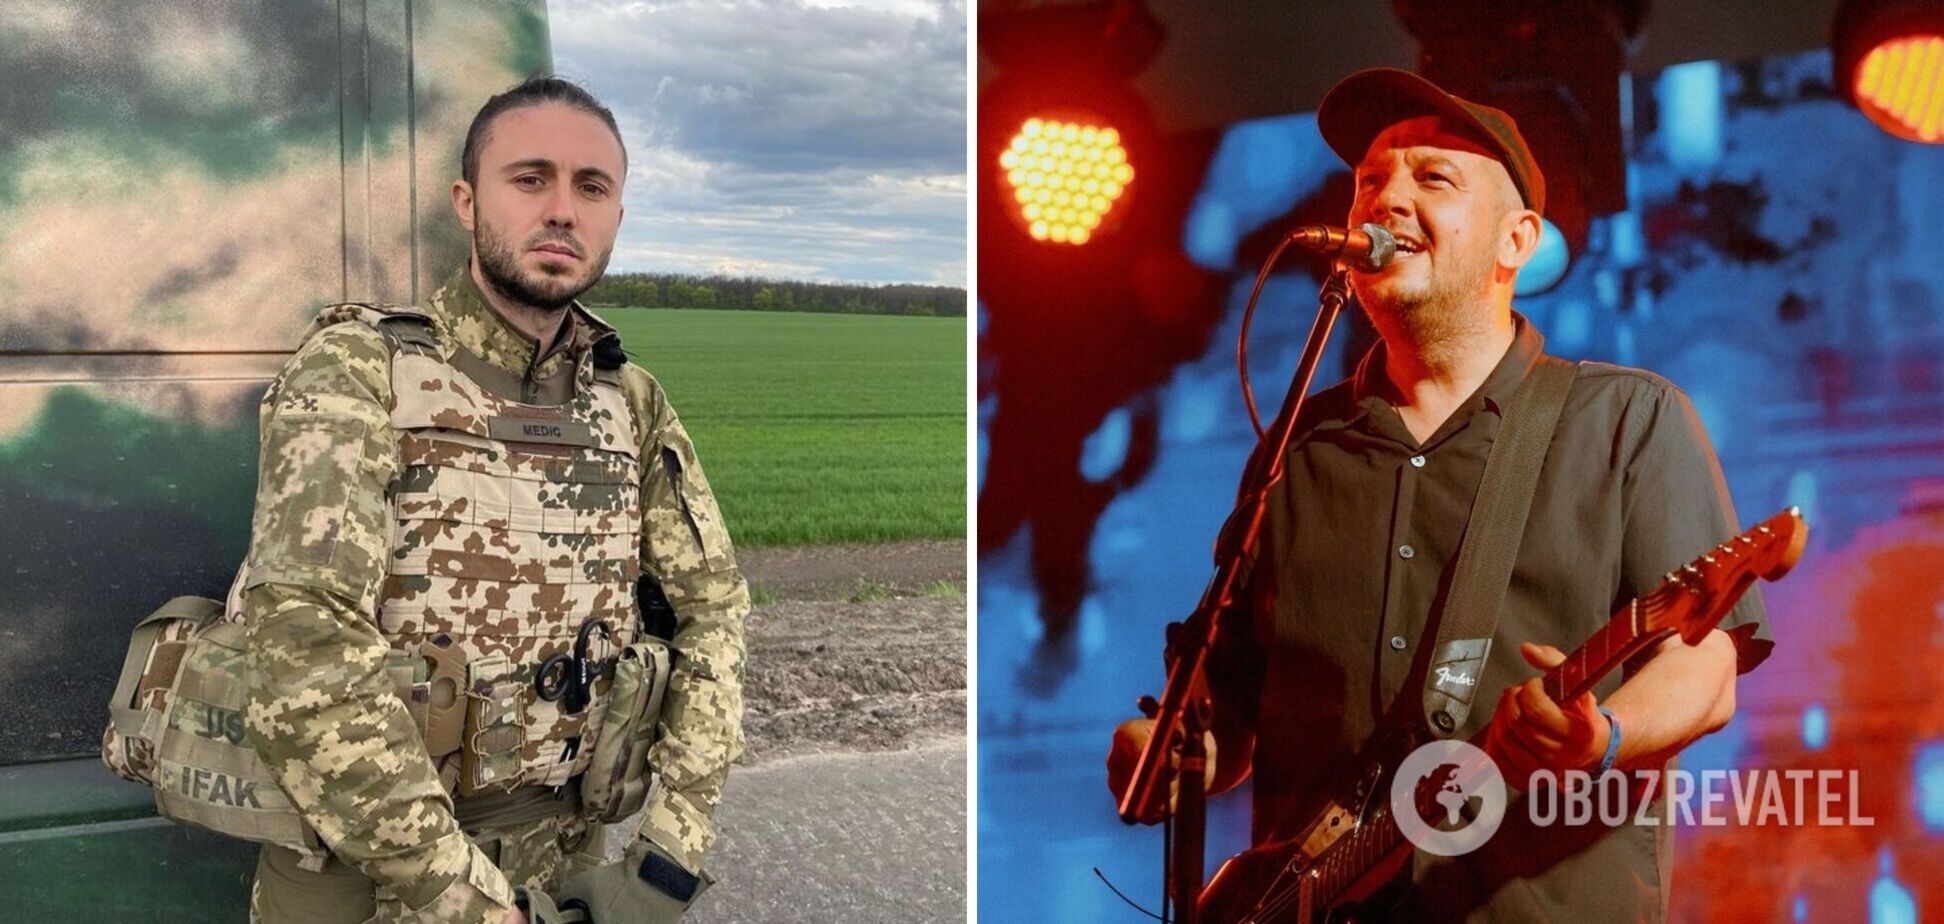 'Мы были близки': Тарас Тополя назвал друга-музыканта из России, который оказался ожесточенным путинистом